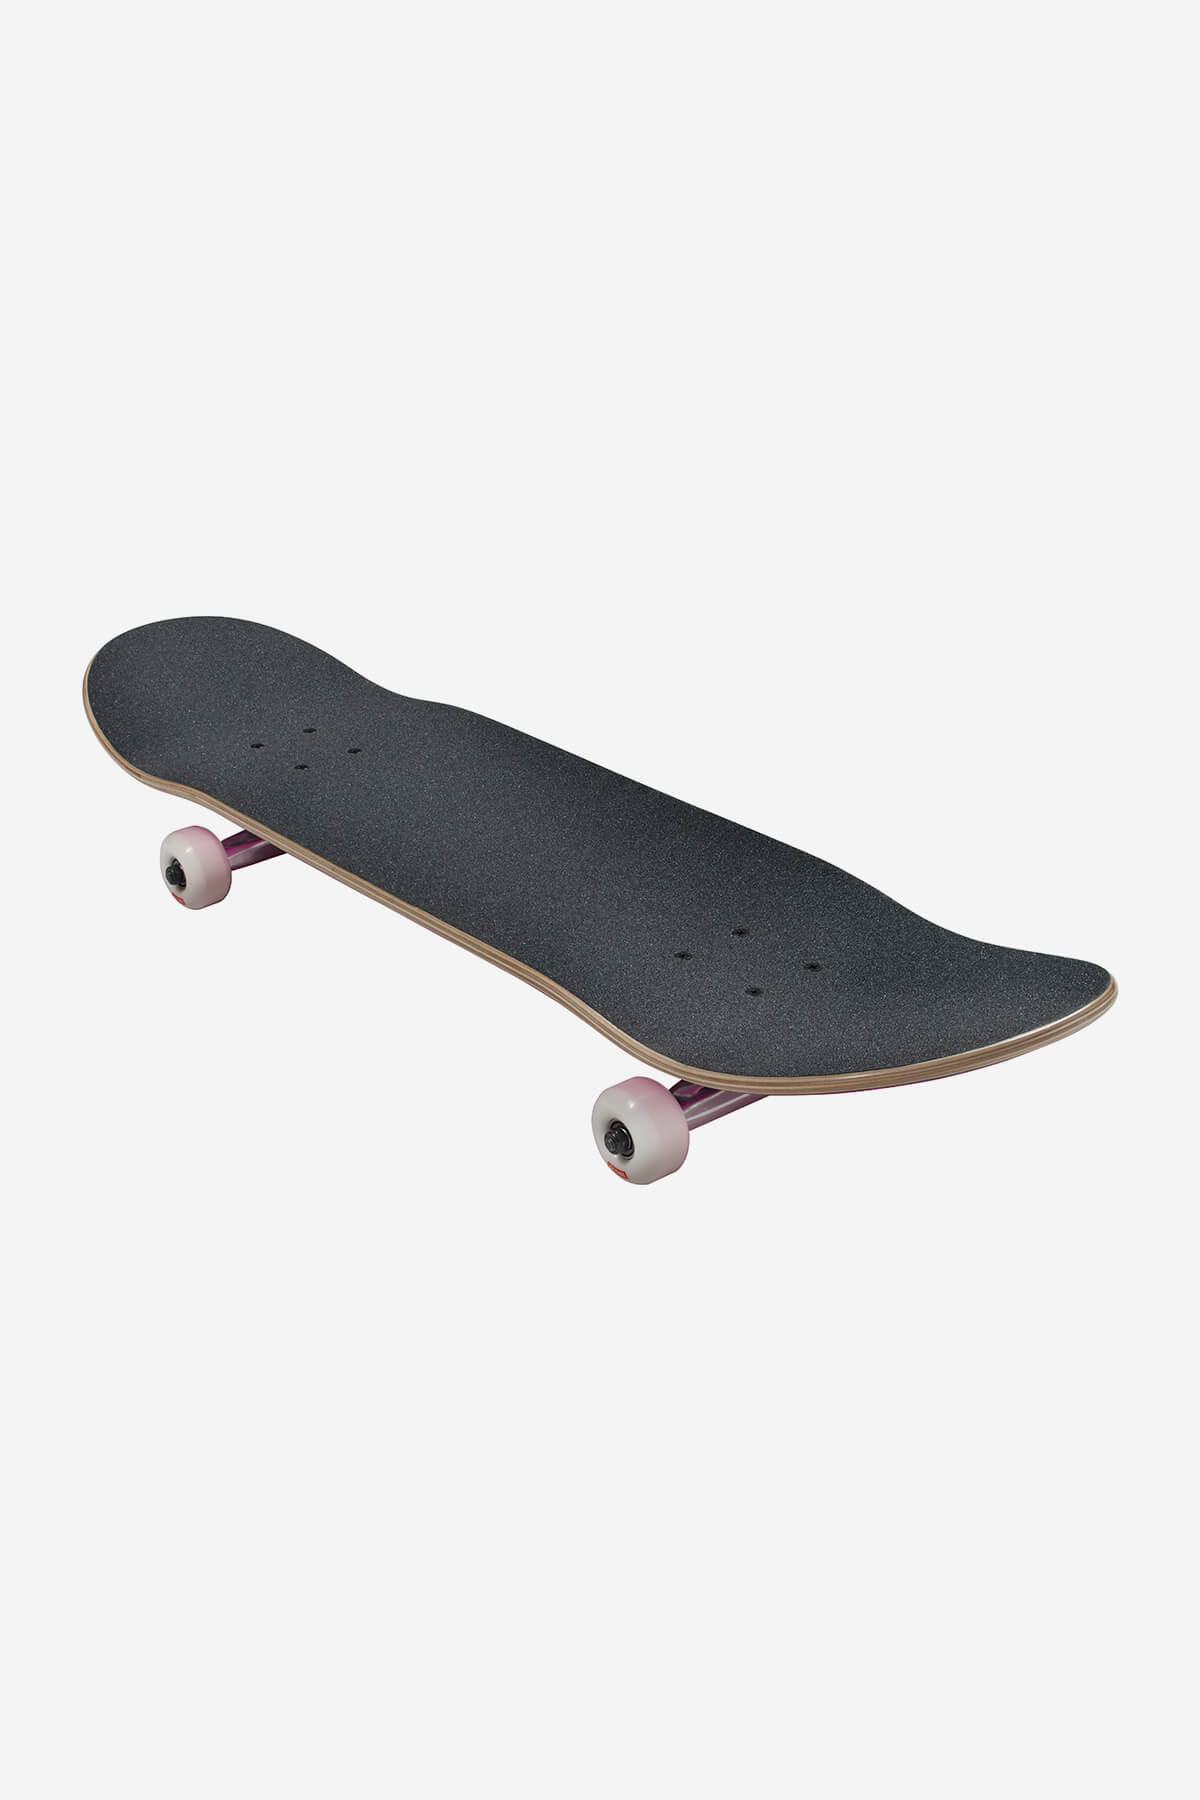 Globe Skateboard completa Goodstock 8.25" Skate Complet Skateboard  in Neon Purple